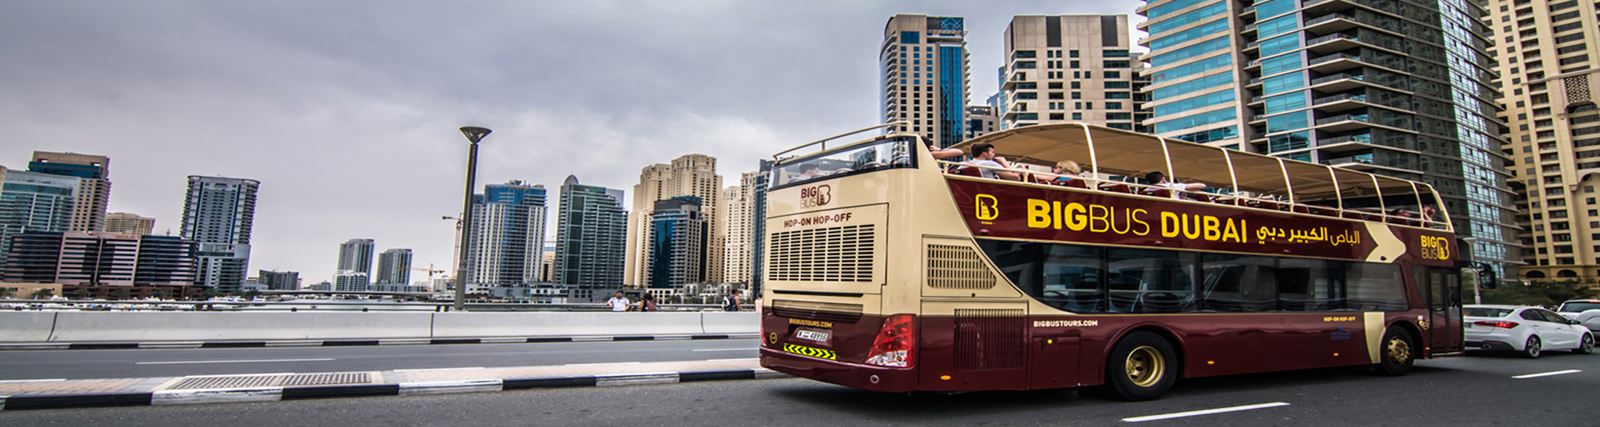 Big Bus Abu Dhabi - Hop-On Hop-Off Bus Tour Abu Dhabi